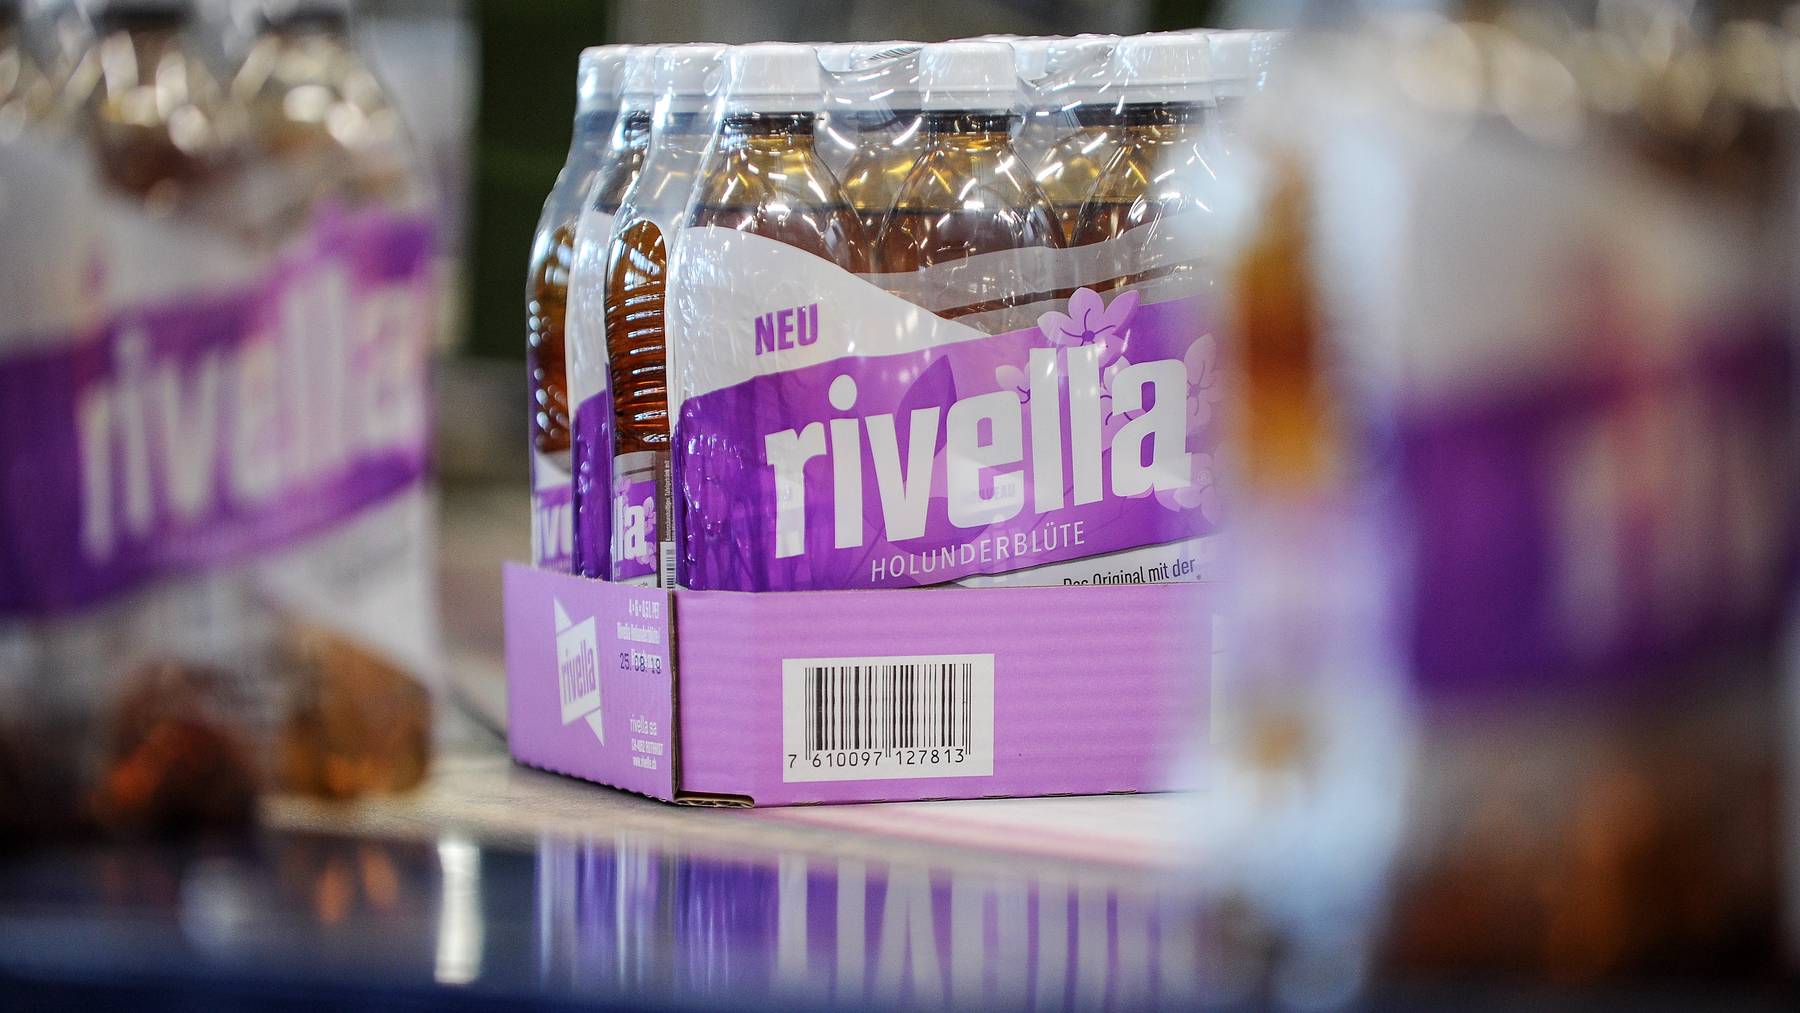 2019 bracht Rivella eine neue Geschmacksrichtung seines Klassikers auf den Markt: Holunderblüte.